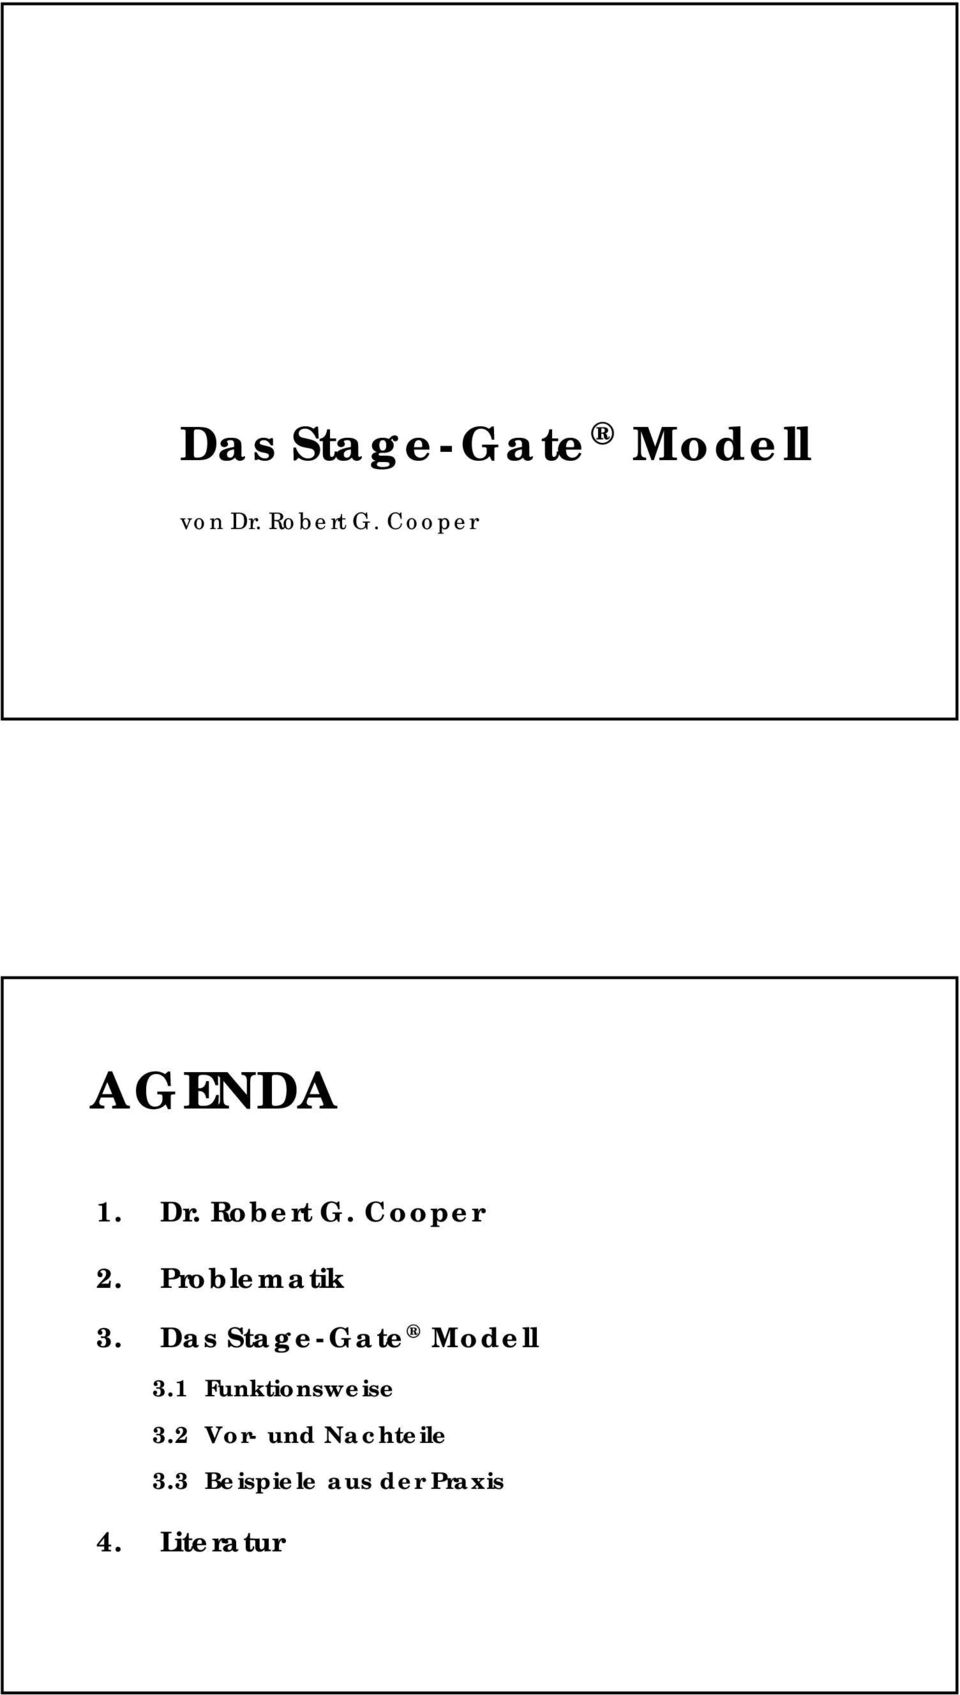 Problematik 3. Das Stage-Gate Modell 3.